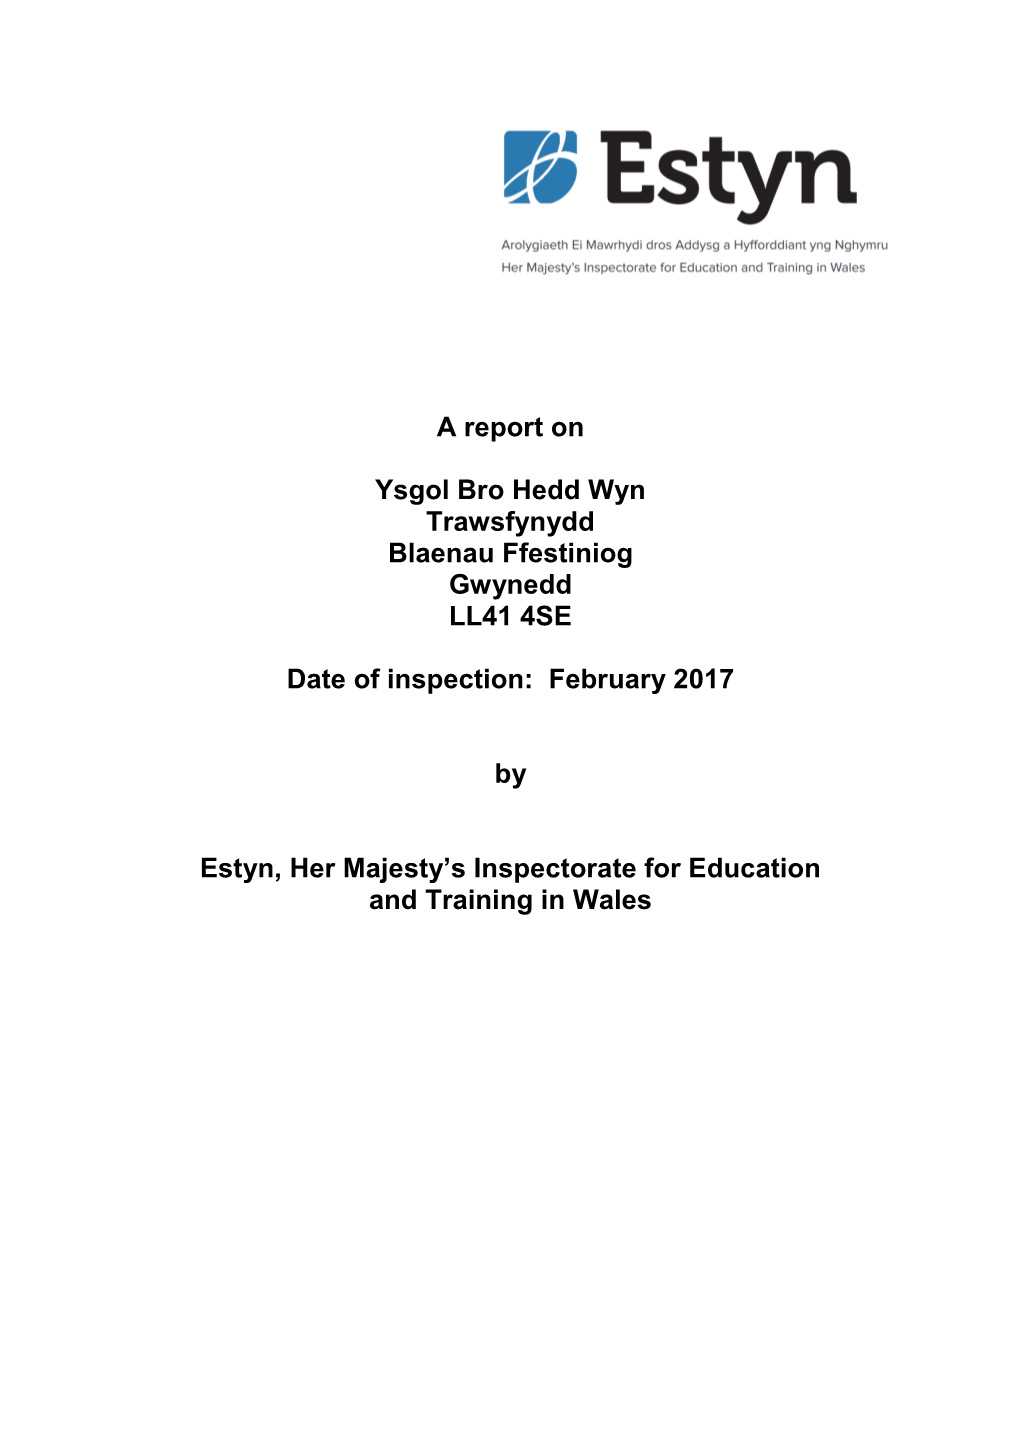 Inspection Report Ysgol Bro Hedd Wyn 2017